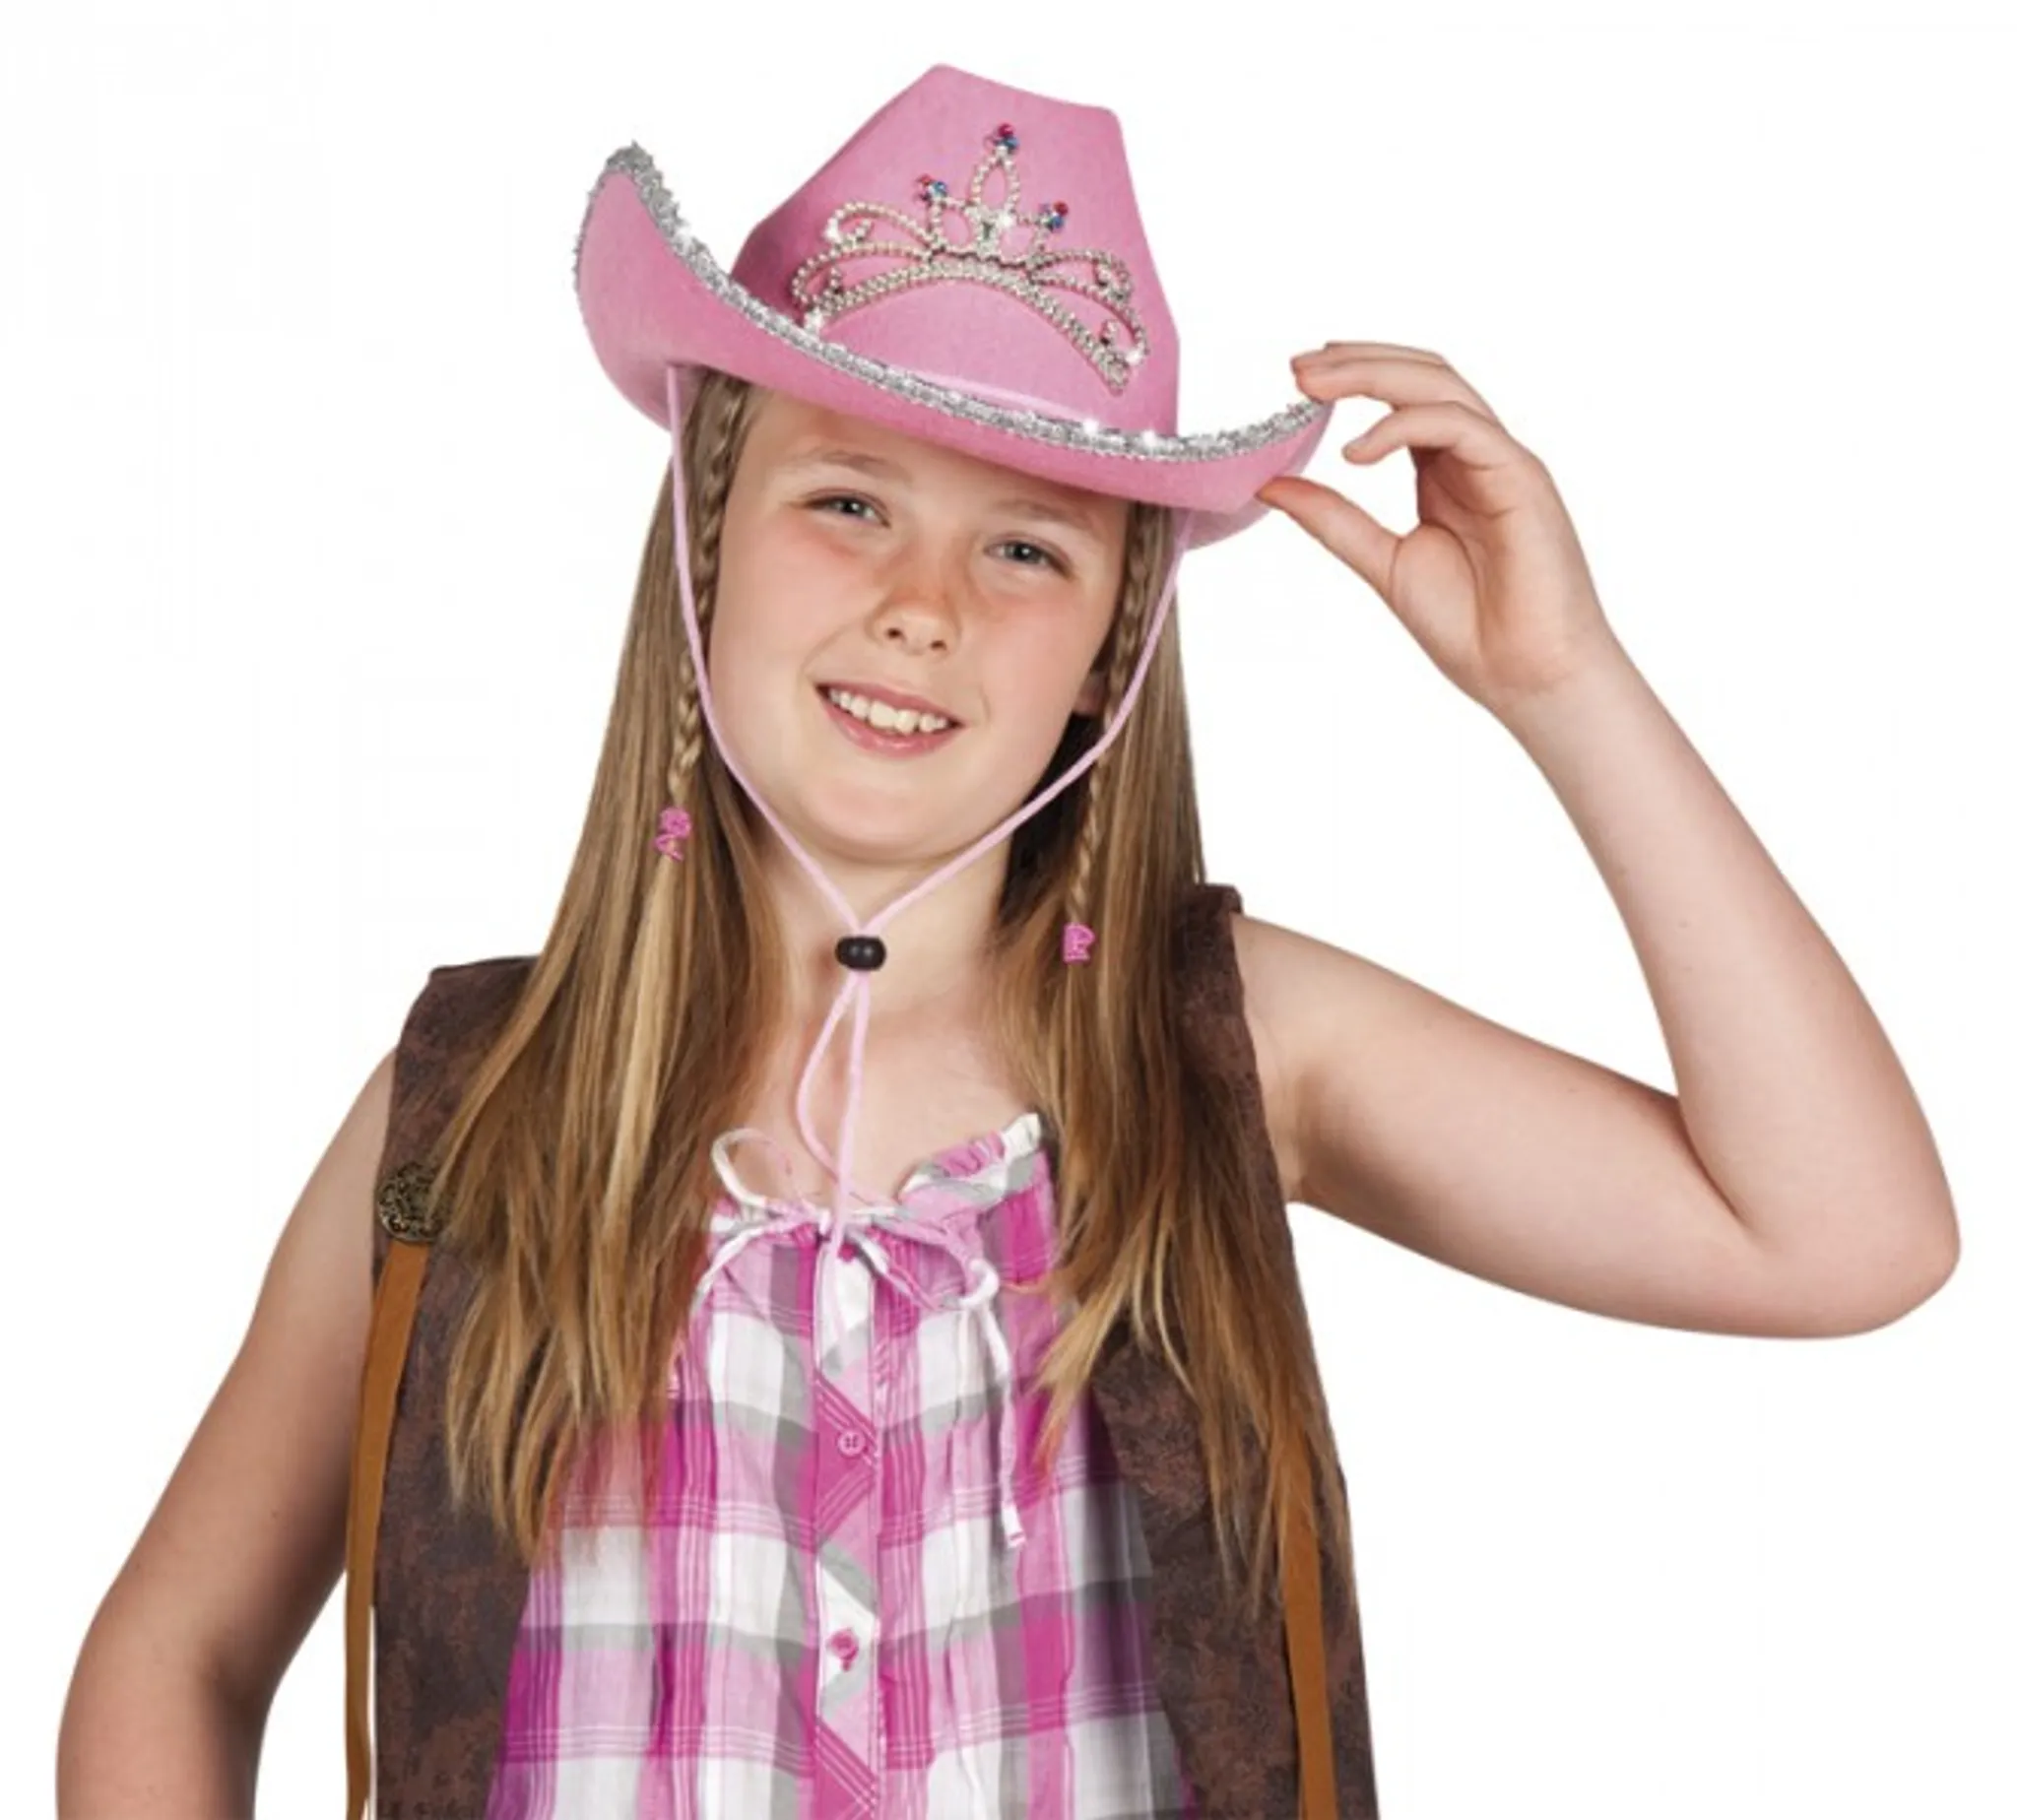 Rosa Cowboyhut - Frauen Mädchen Cowgirl Prinzessin Hut mit Krone